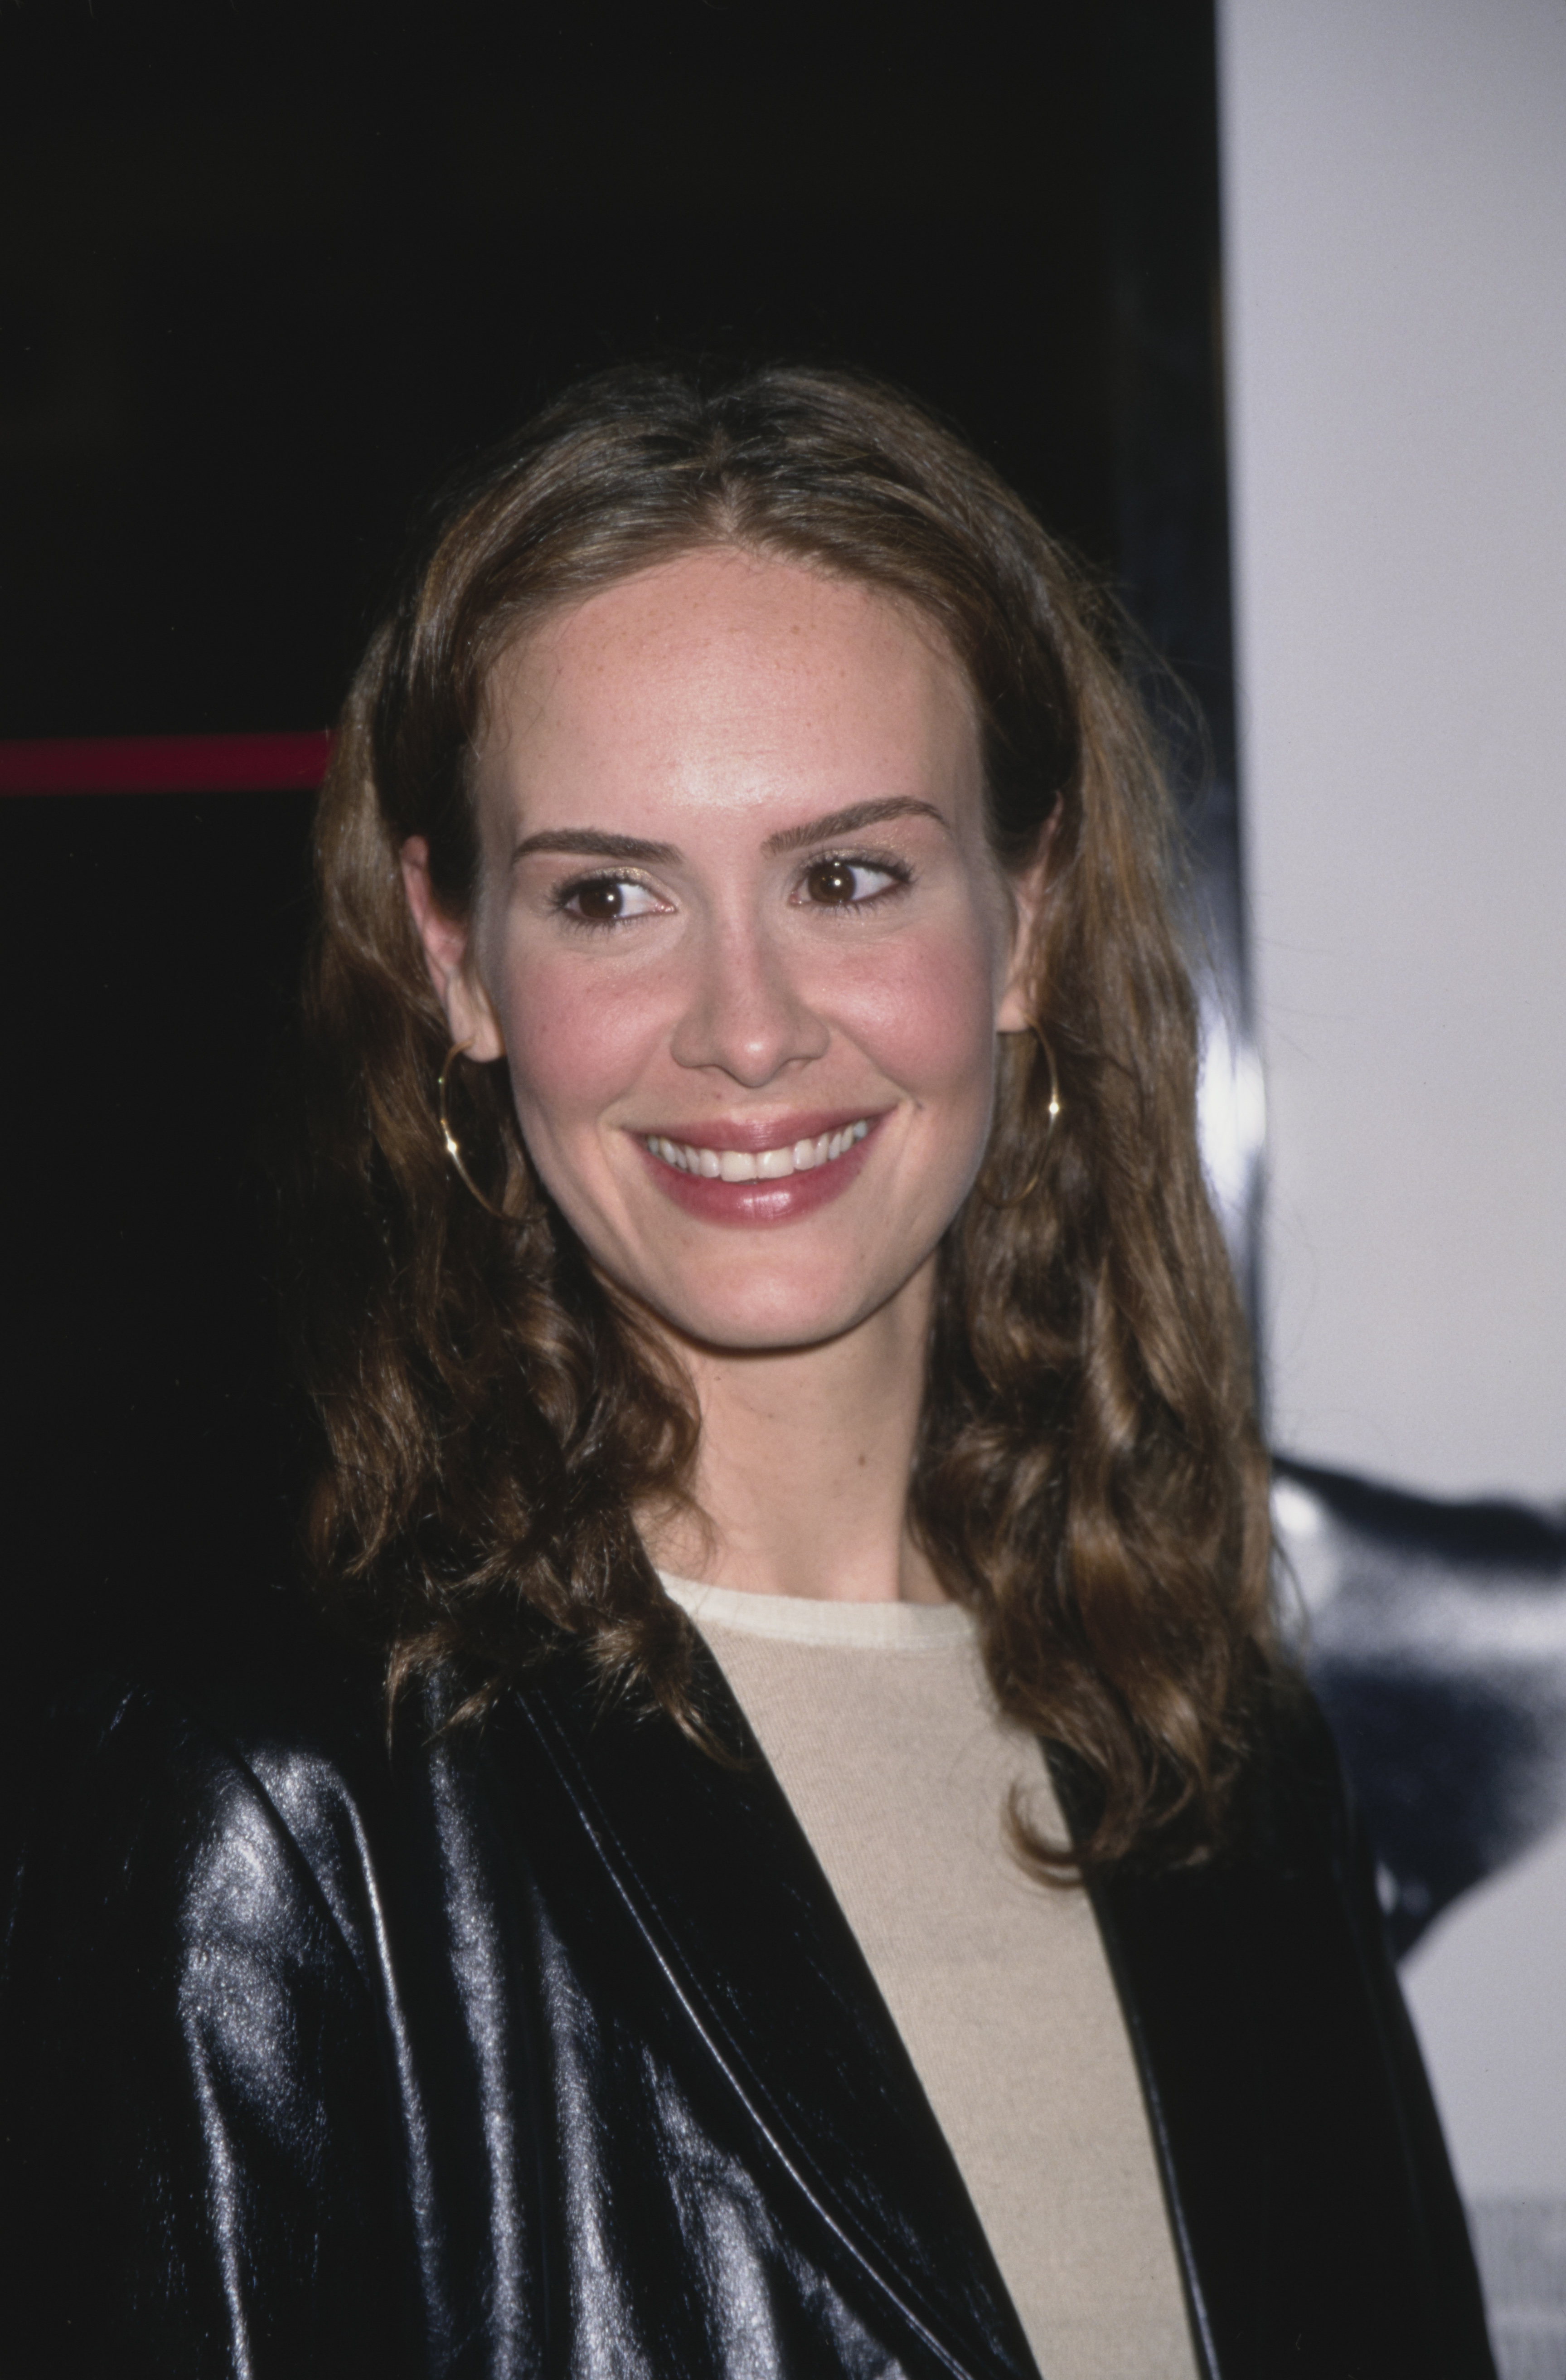 La actriz en el estreno de "Get Carter" en Los Ángeles, California, el 4 de octubre de 2000. | Fuente: Getty Images